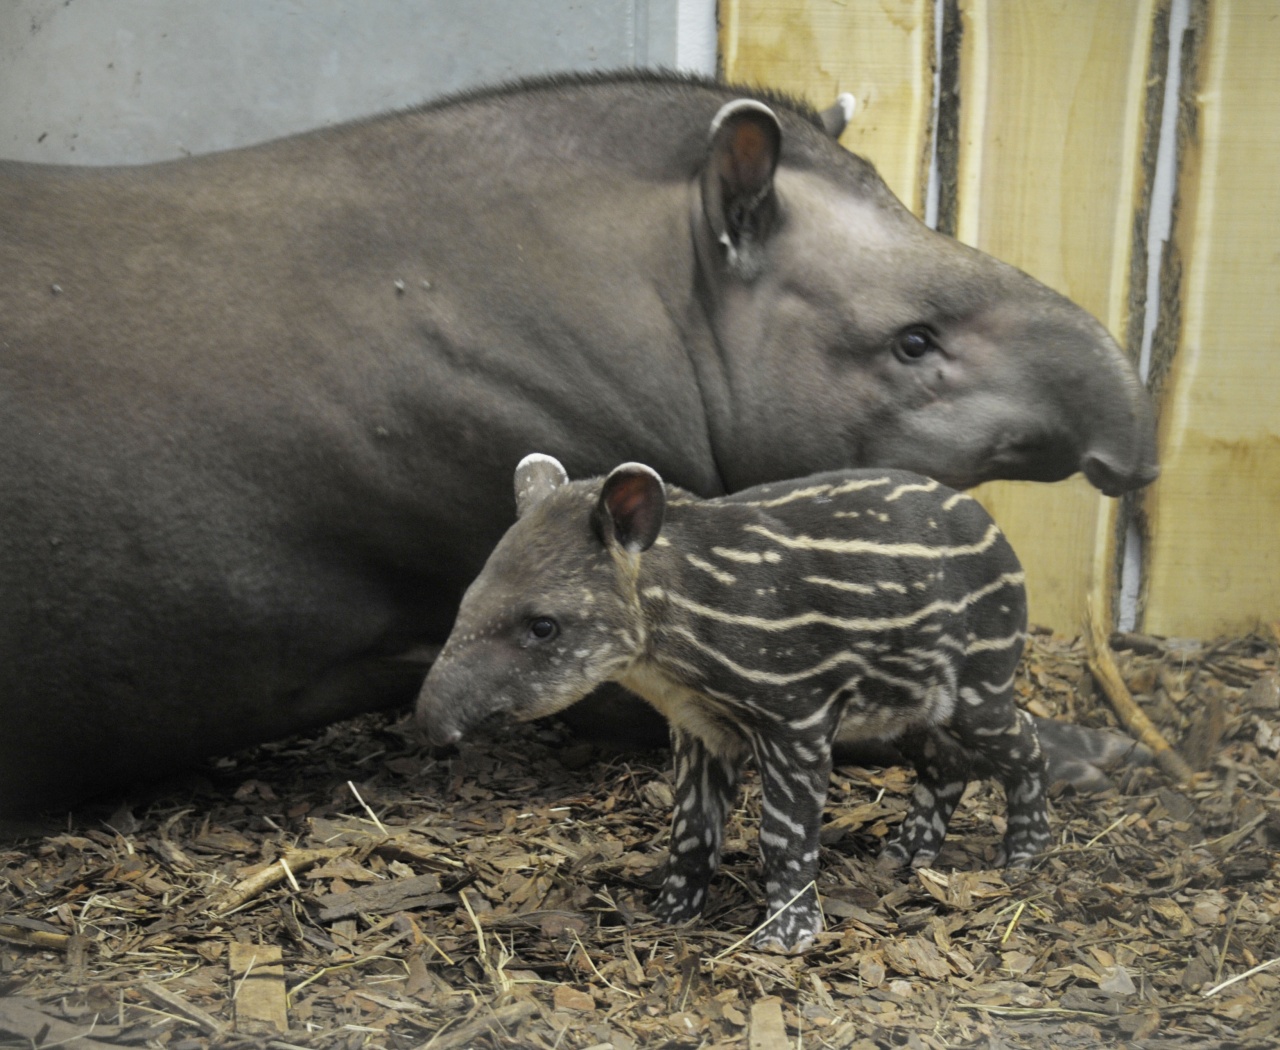 Dél-amerikai tapírbébi született Nyíregyházán